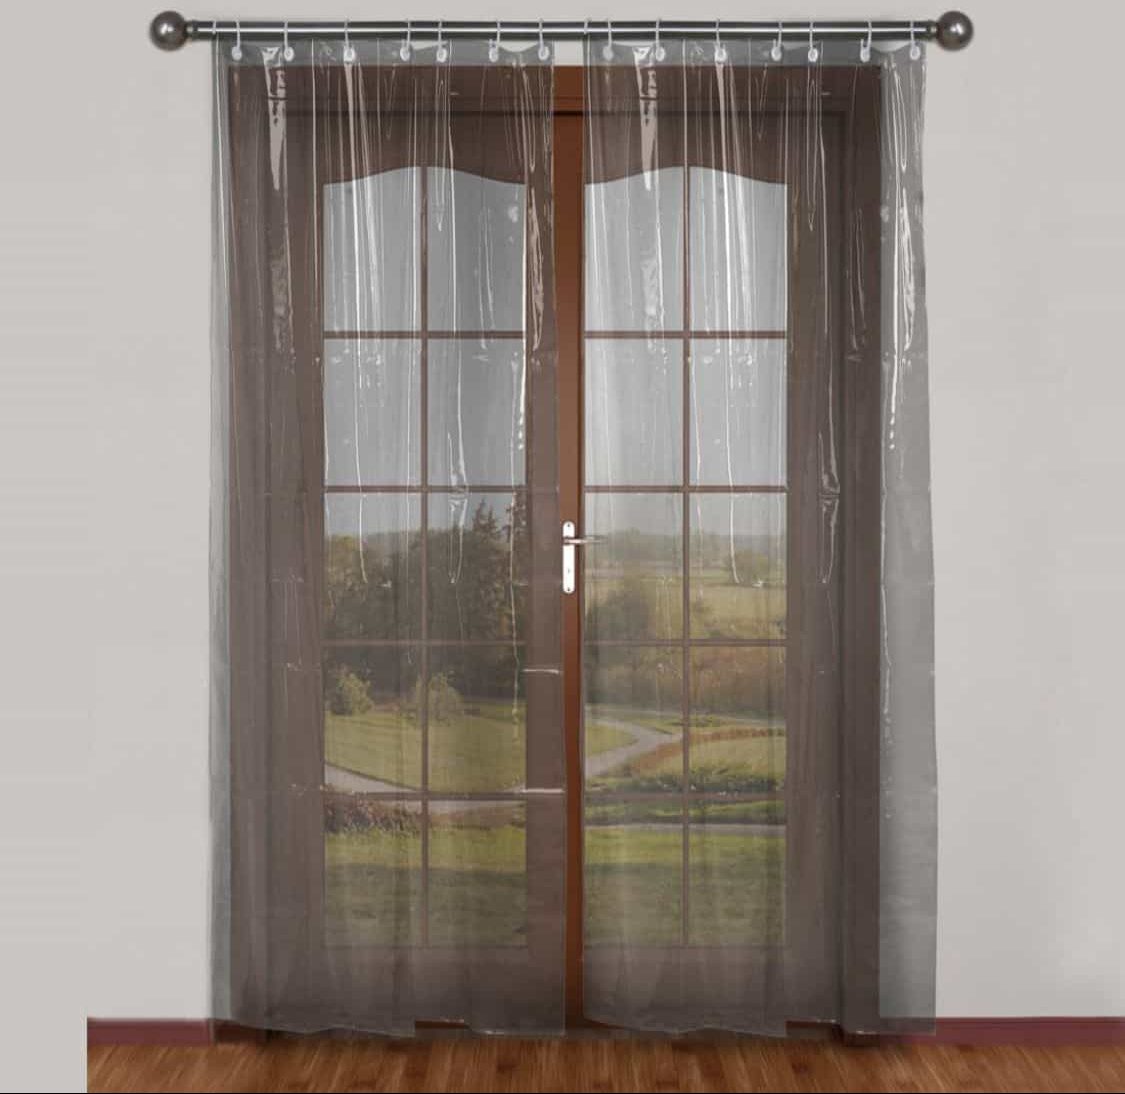 Acrylic curtain for door